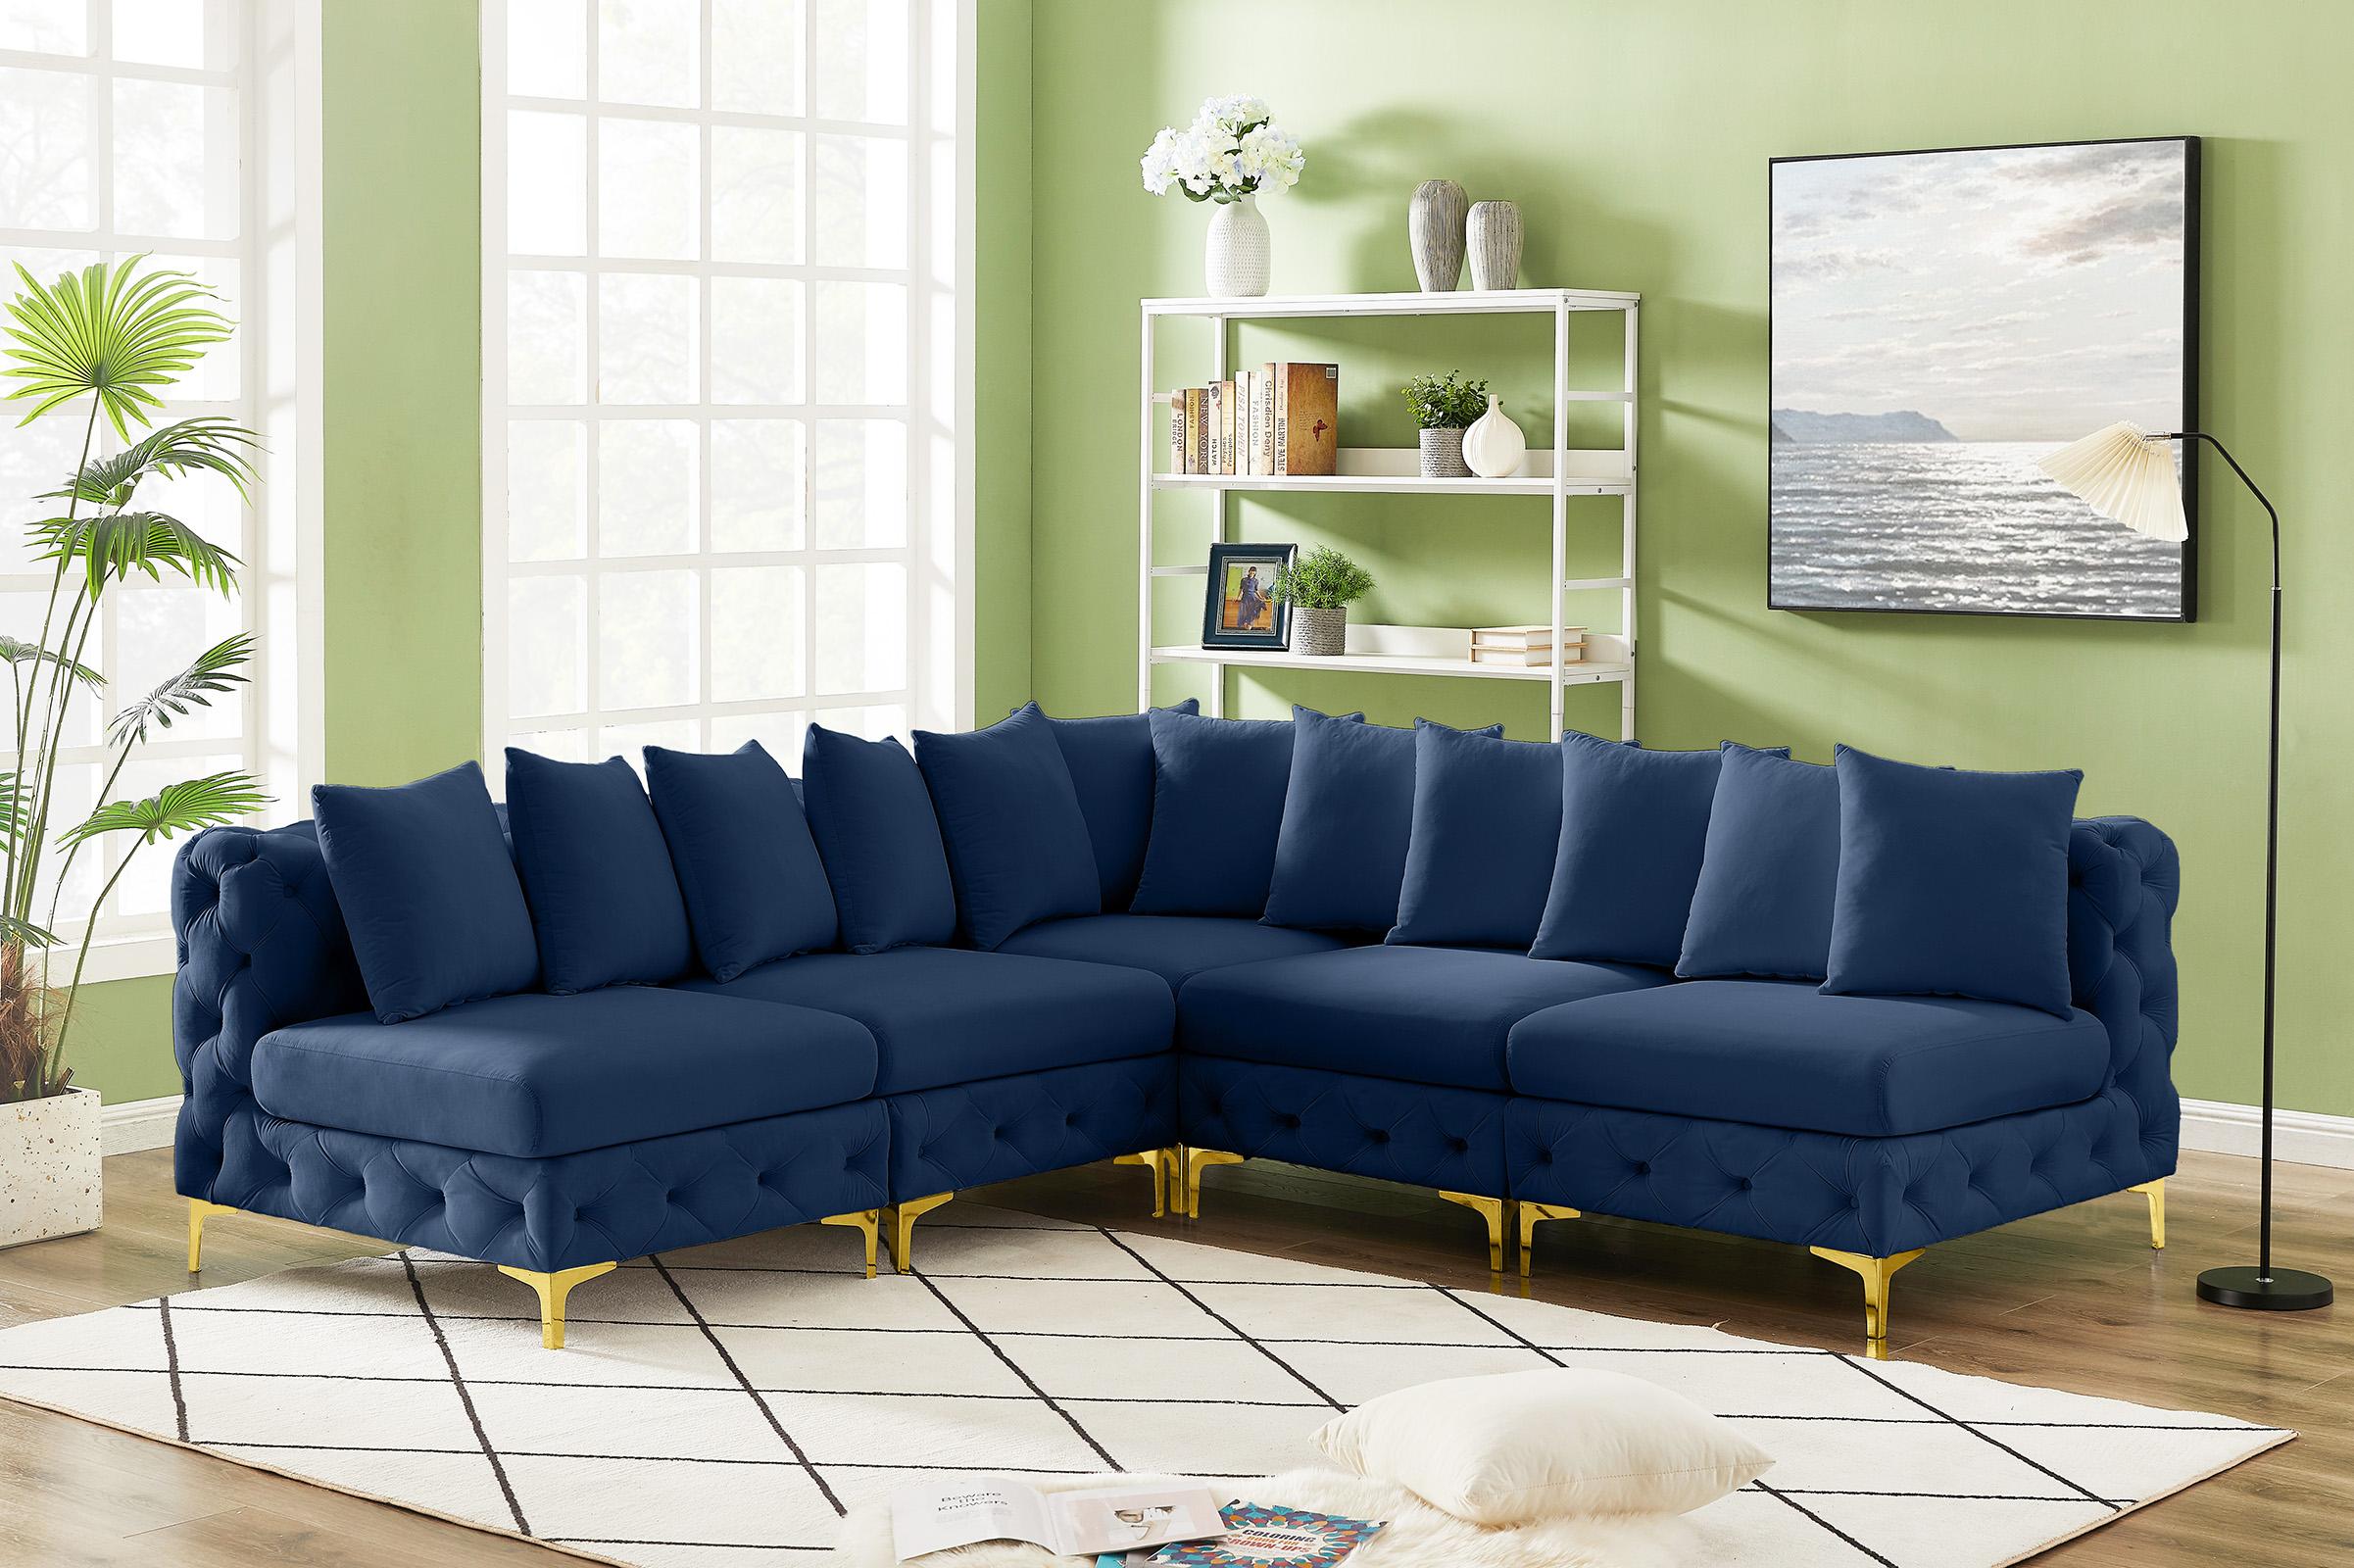 

    
686Navy-Sec5B Meridian Furniture Modular Sectional Sofa
